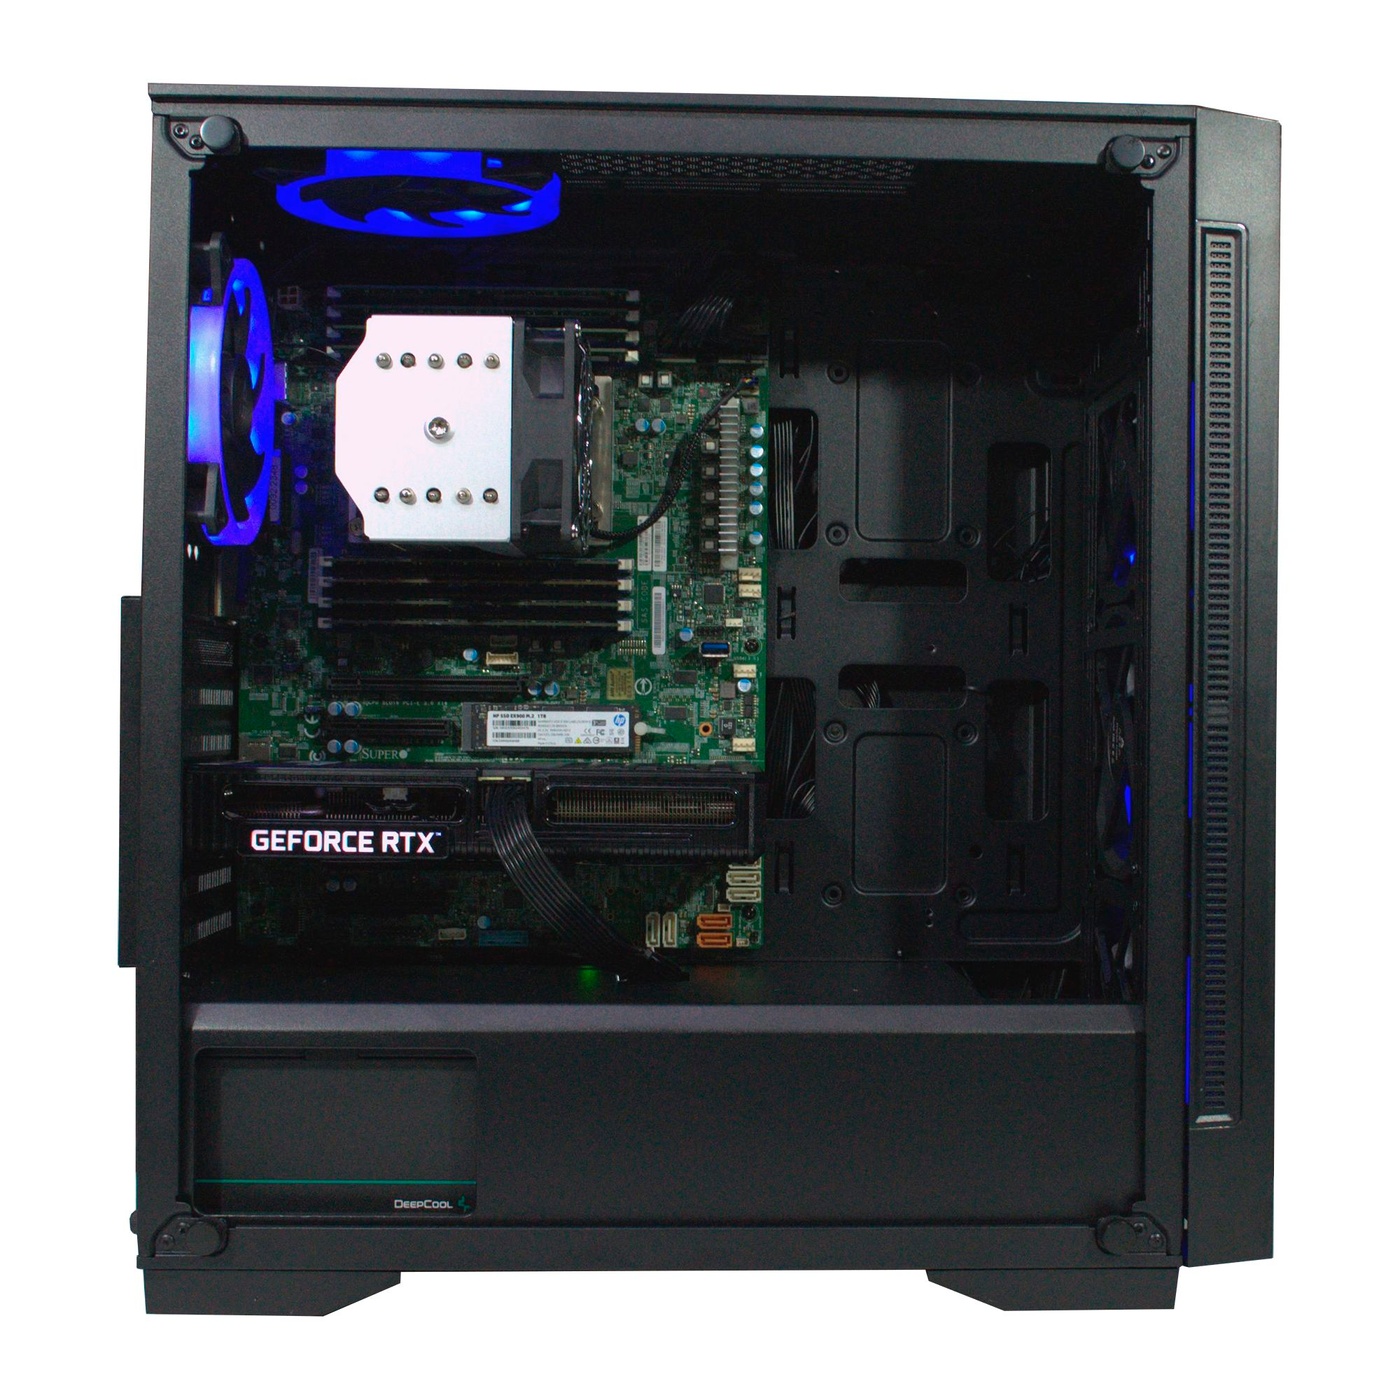 Робоча станція PowerUp #255 AMD EPYC 7702/128 GB/HDD 2 TB/SSD 512GB/GeForce RTX 3060 12GB